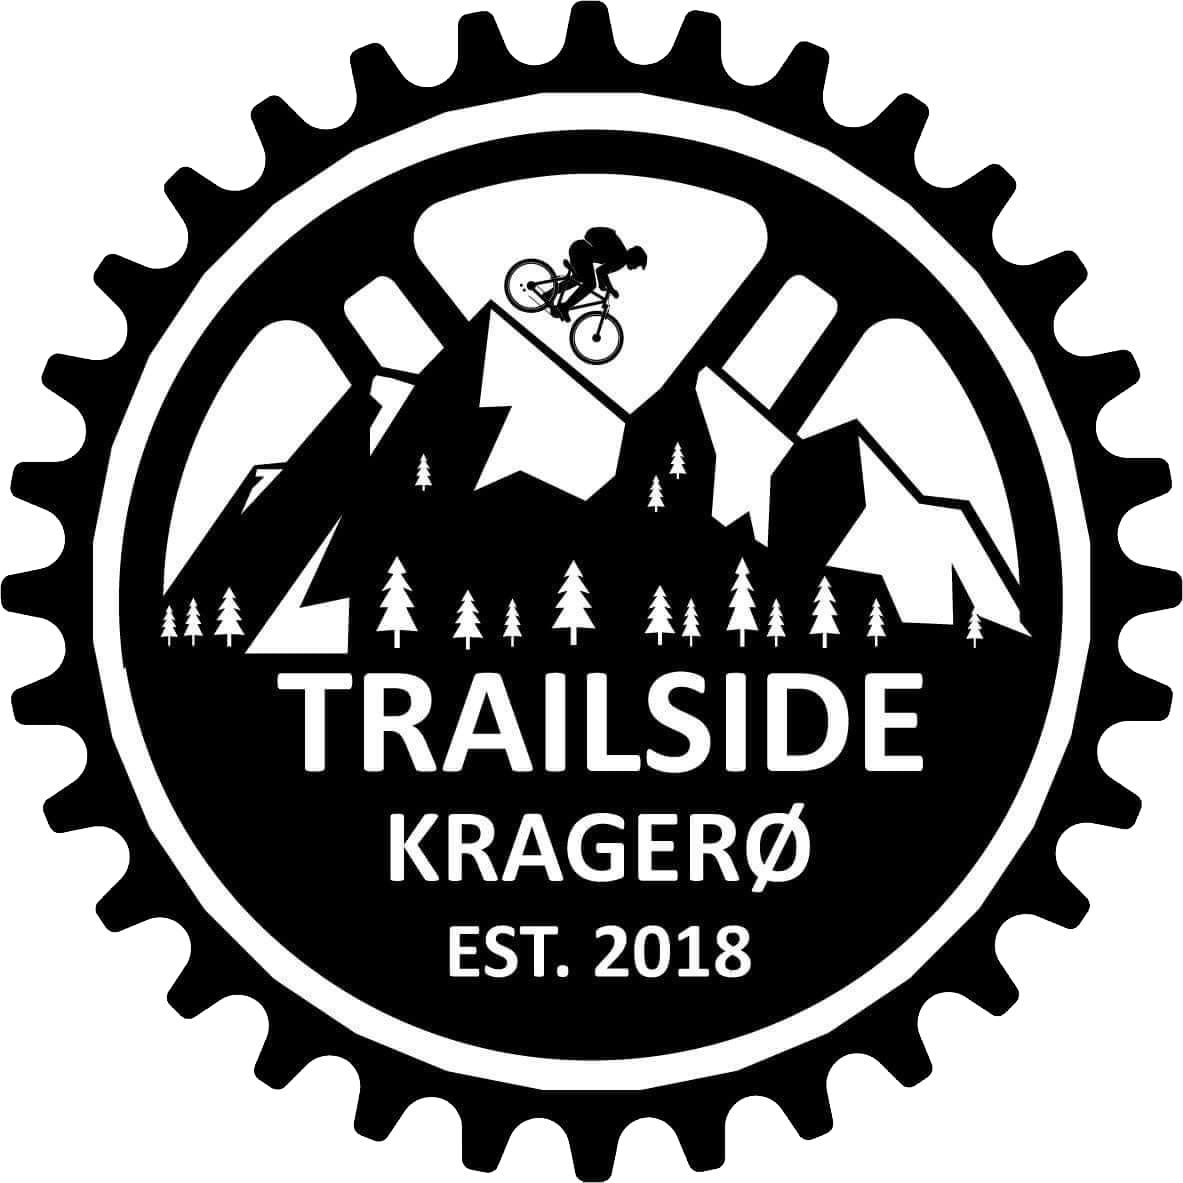 Trailside Kragerø AS